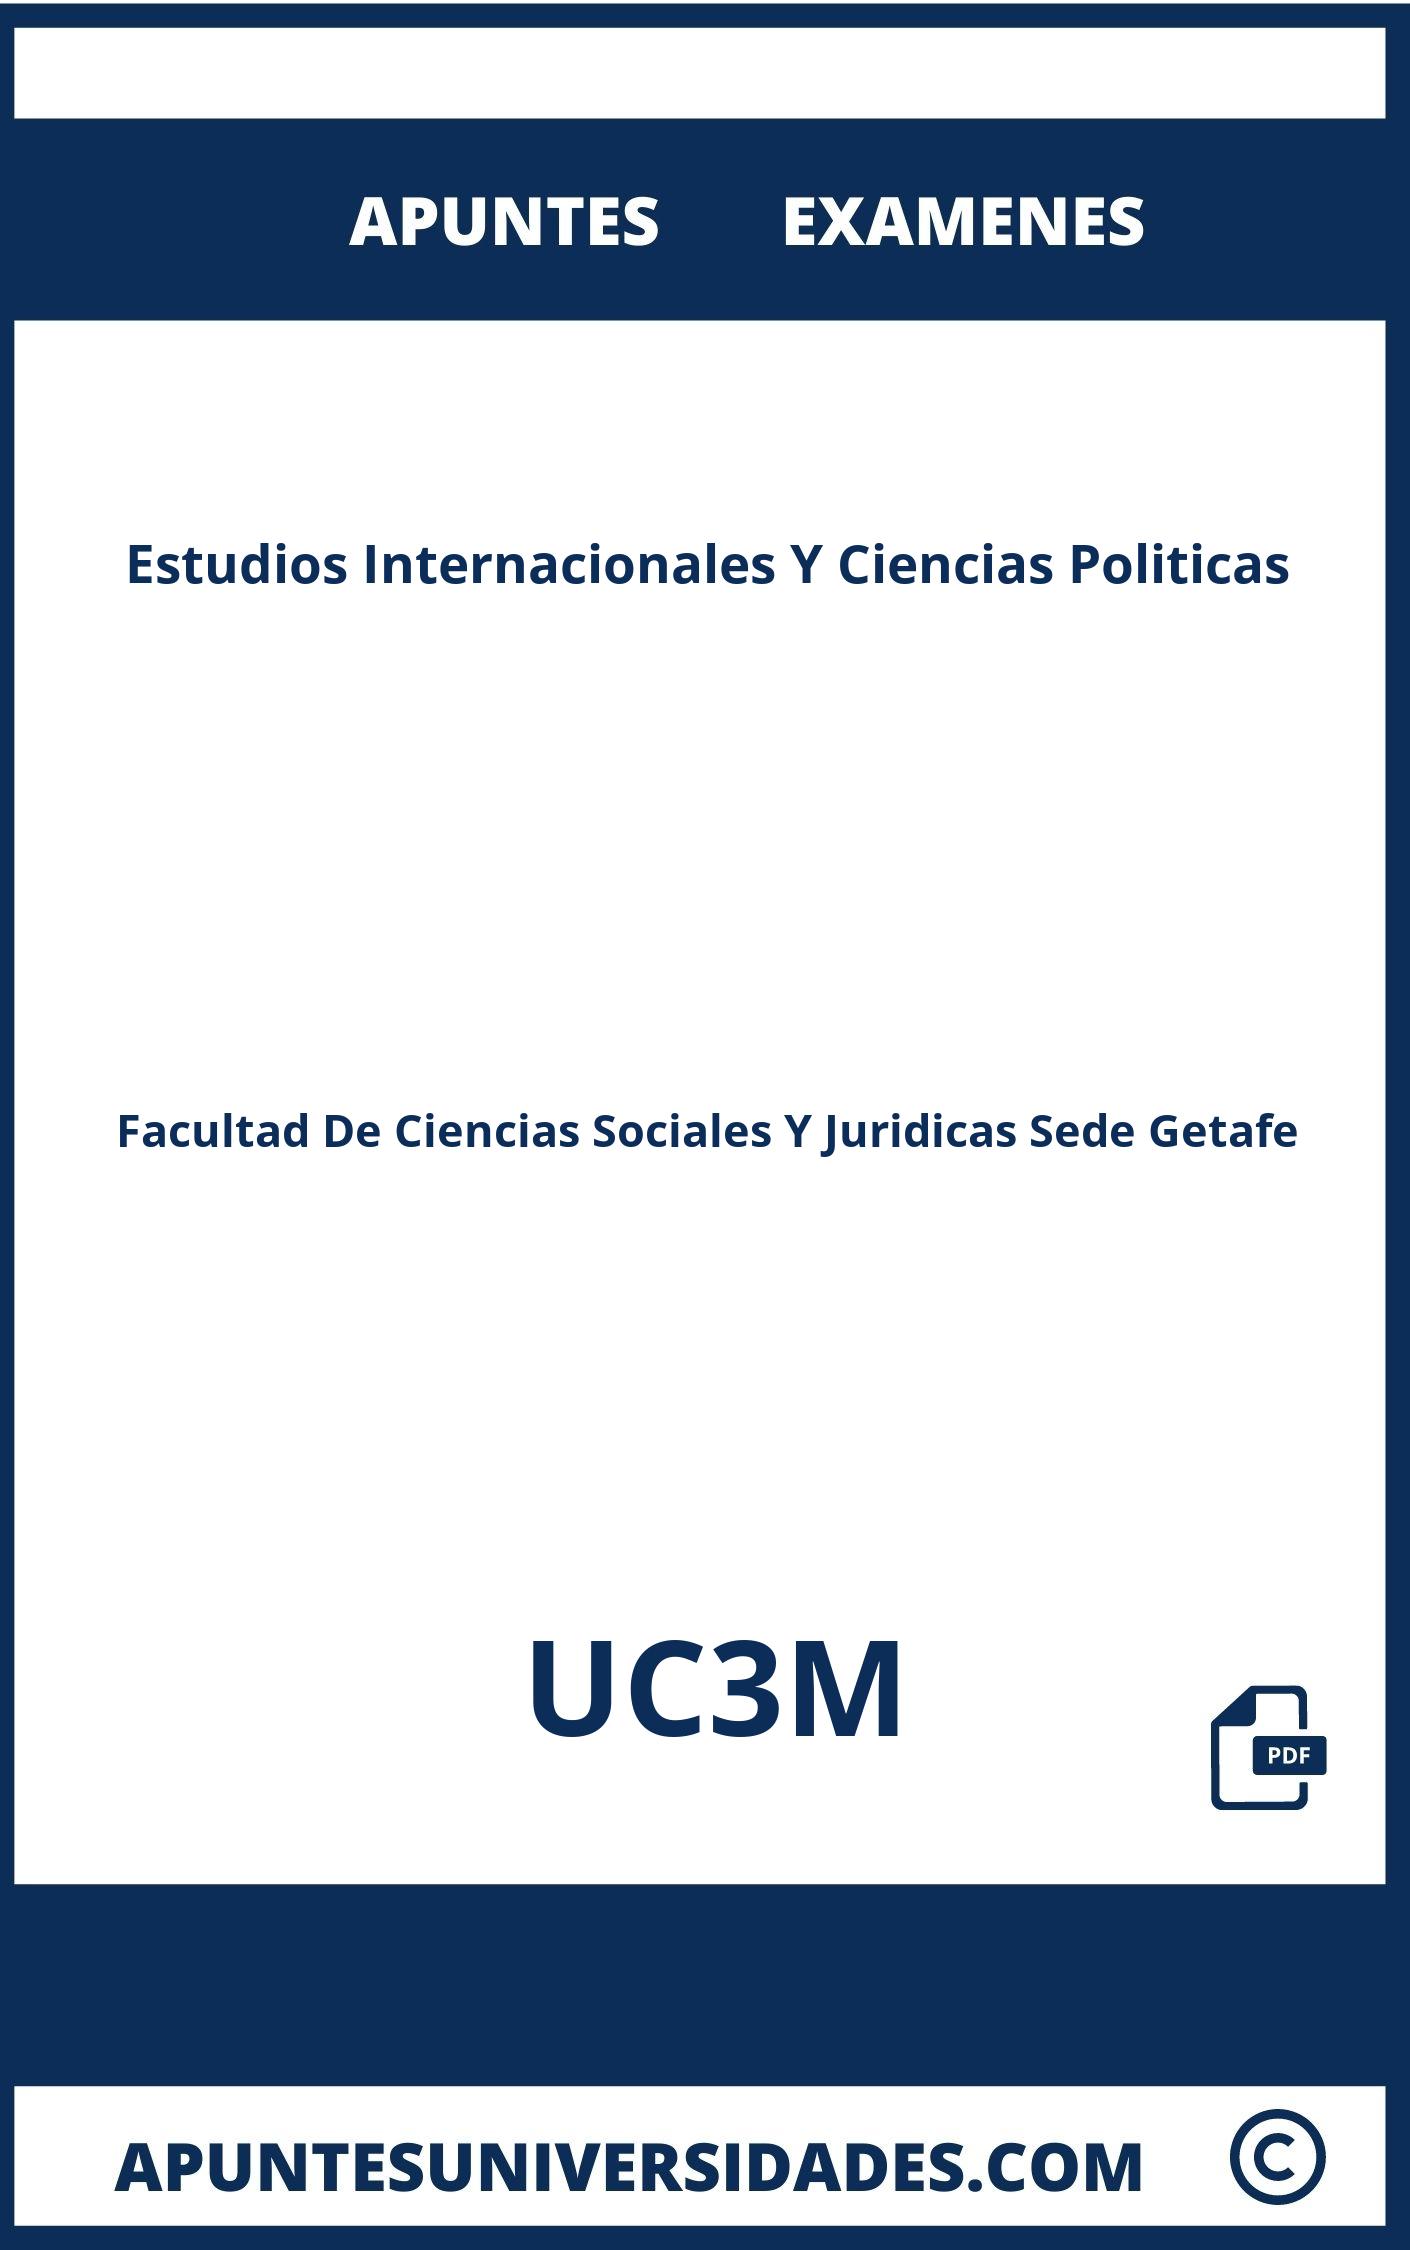 Apuntes Estudios Internacionales Y Ciencias Politicas UC3M y Examenes